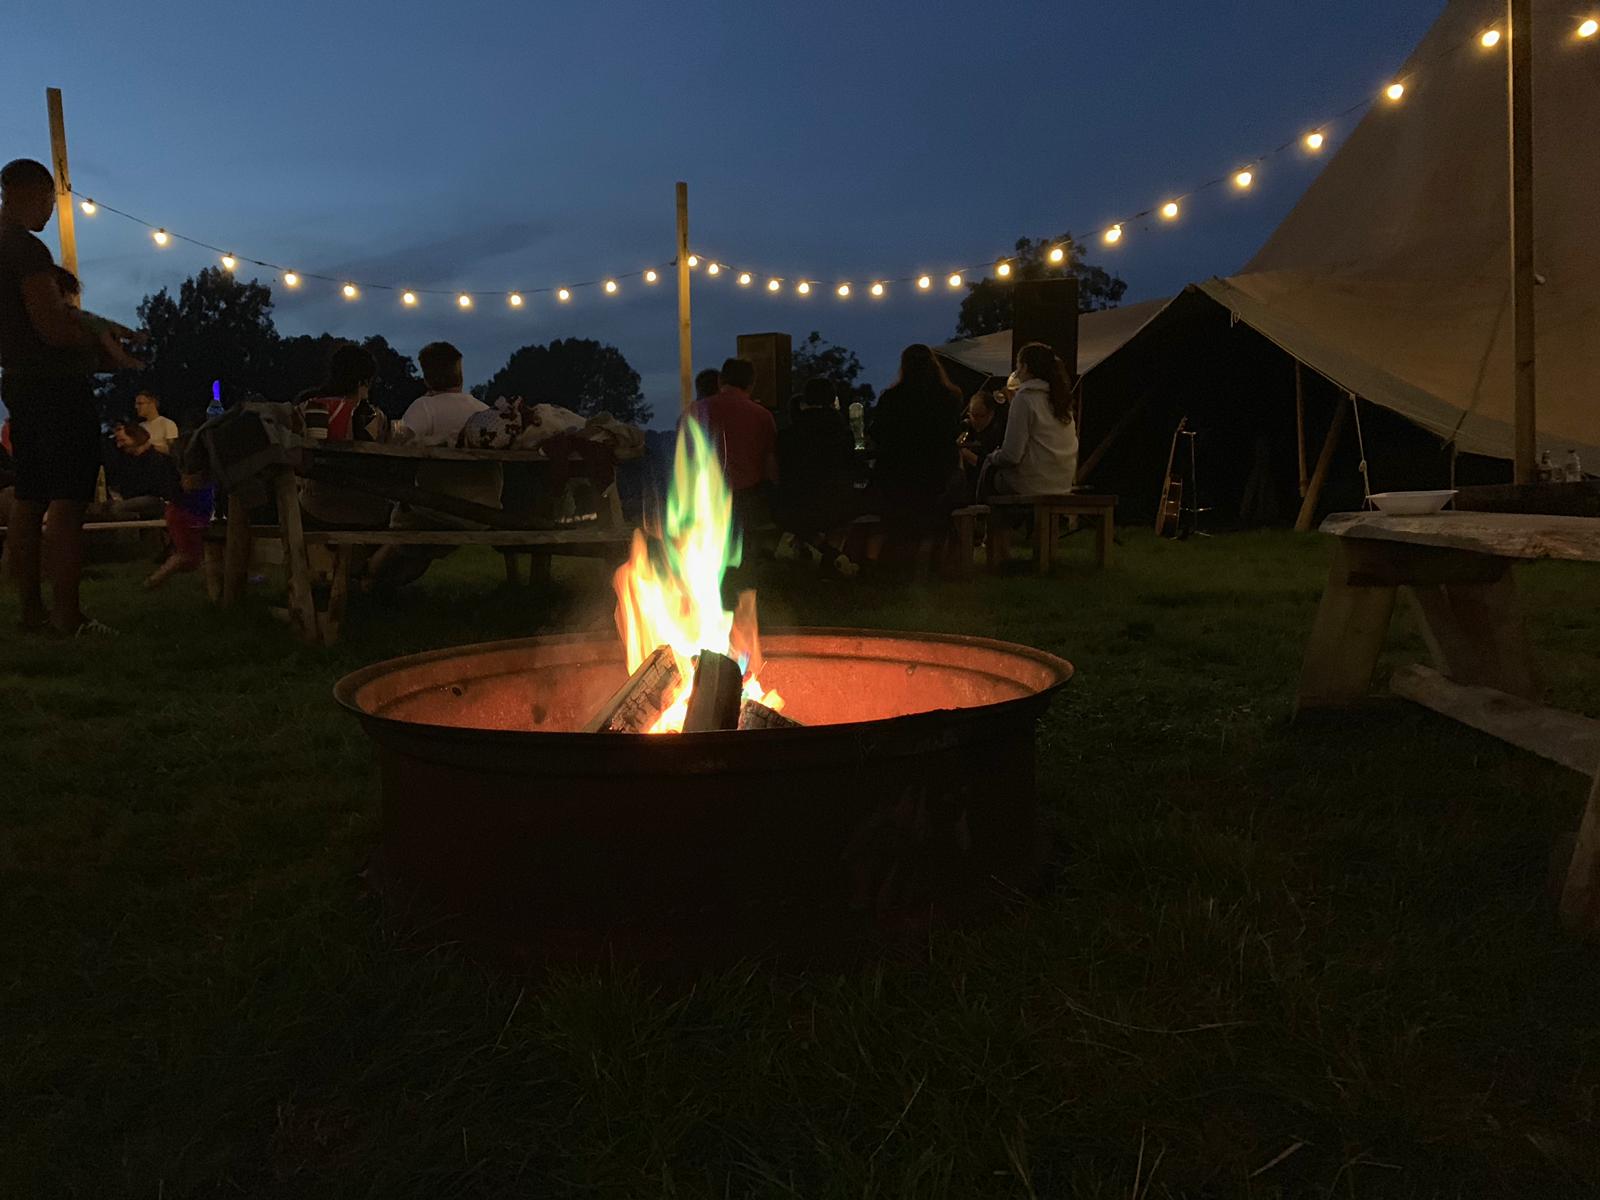 Campfires at Bedgebury Camping